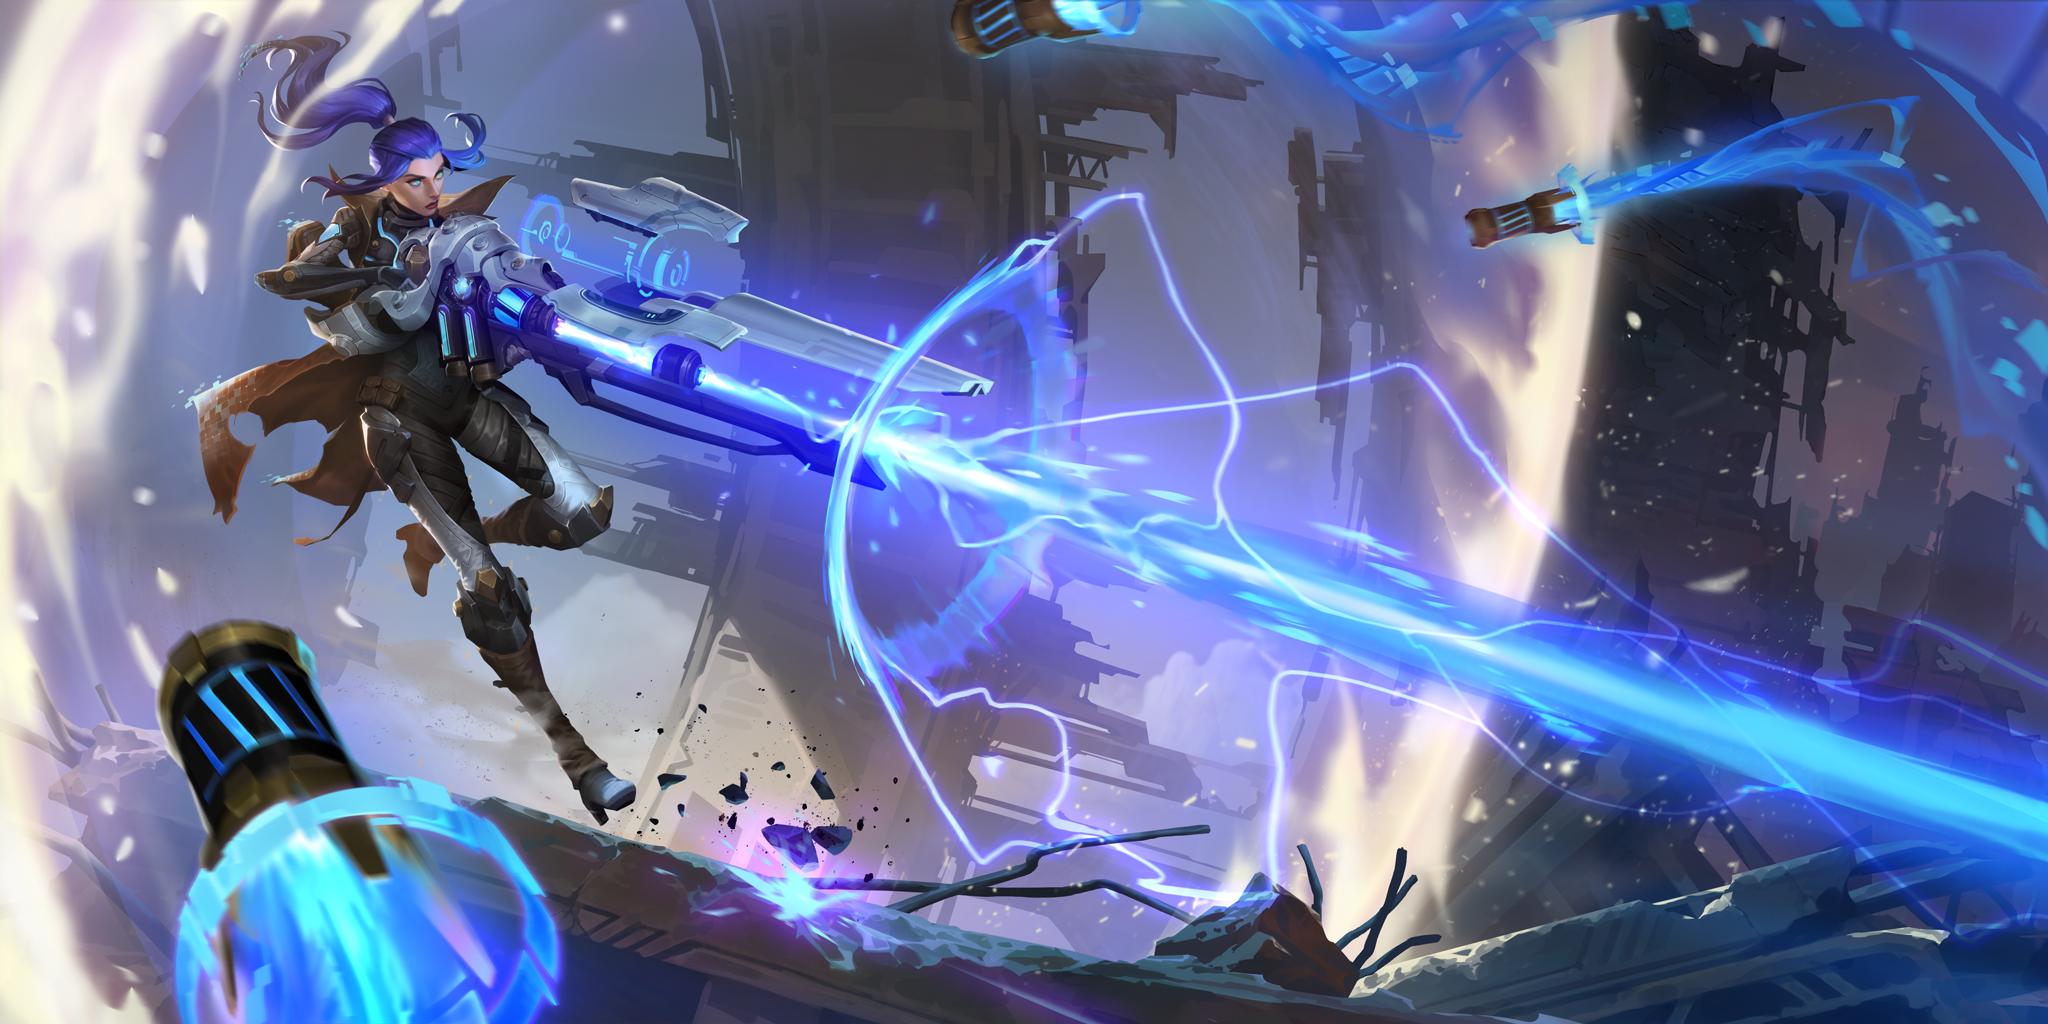 Asistencia al jugador de Legends of Runeterra, Caitlyn pulso de fuego disparando un rayo de energía con su rifle enorme mientras unos misiles se dirigen hacia ella.